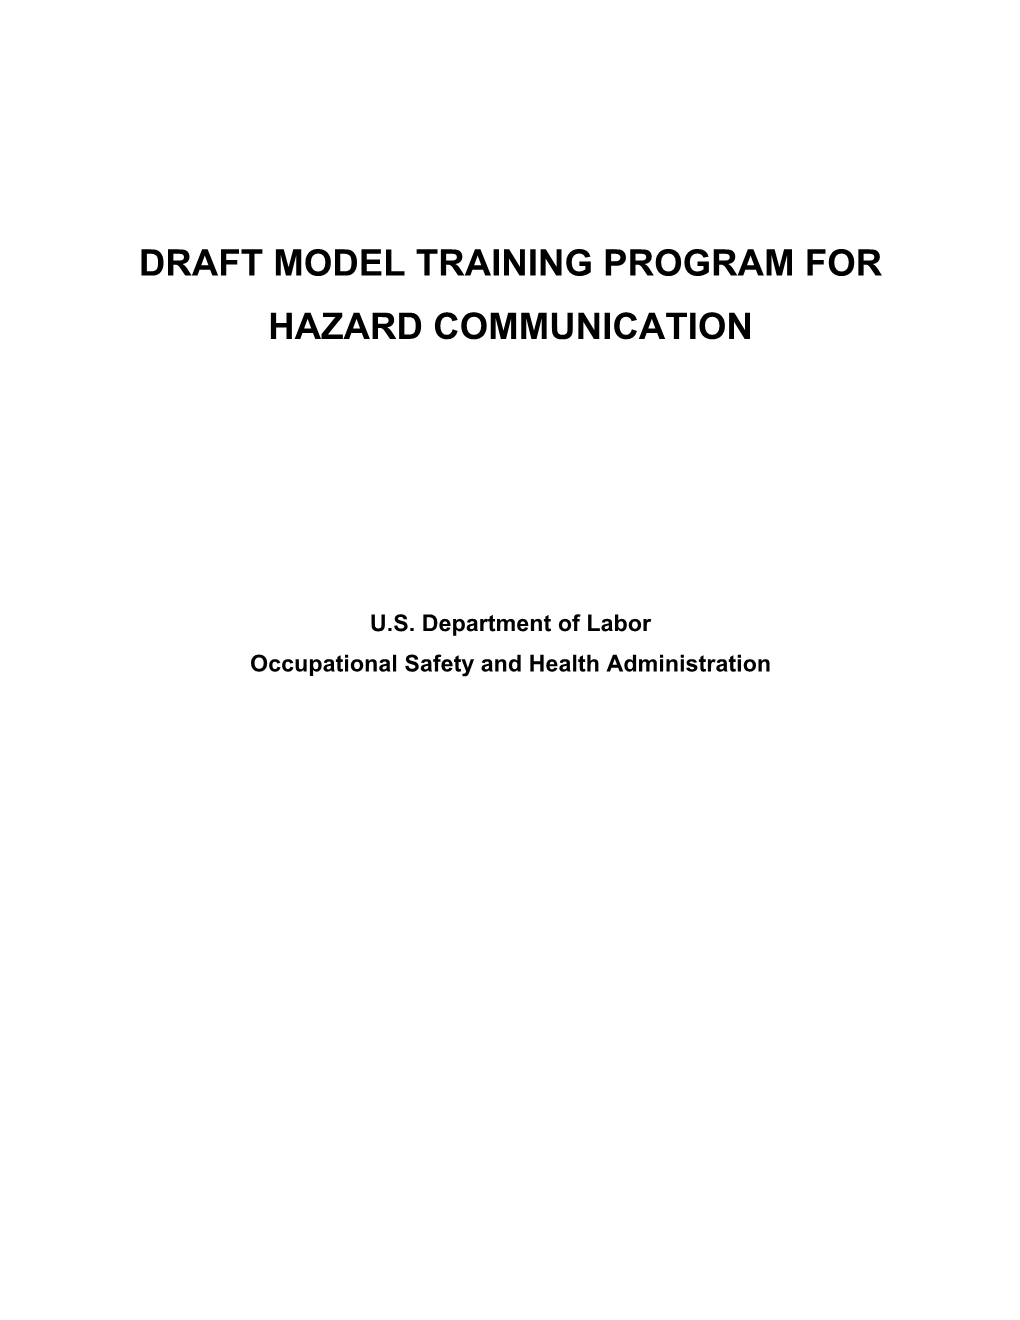 Draft Model Training Program for Hazard Communication